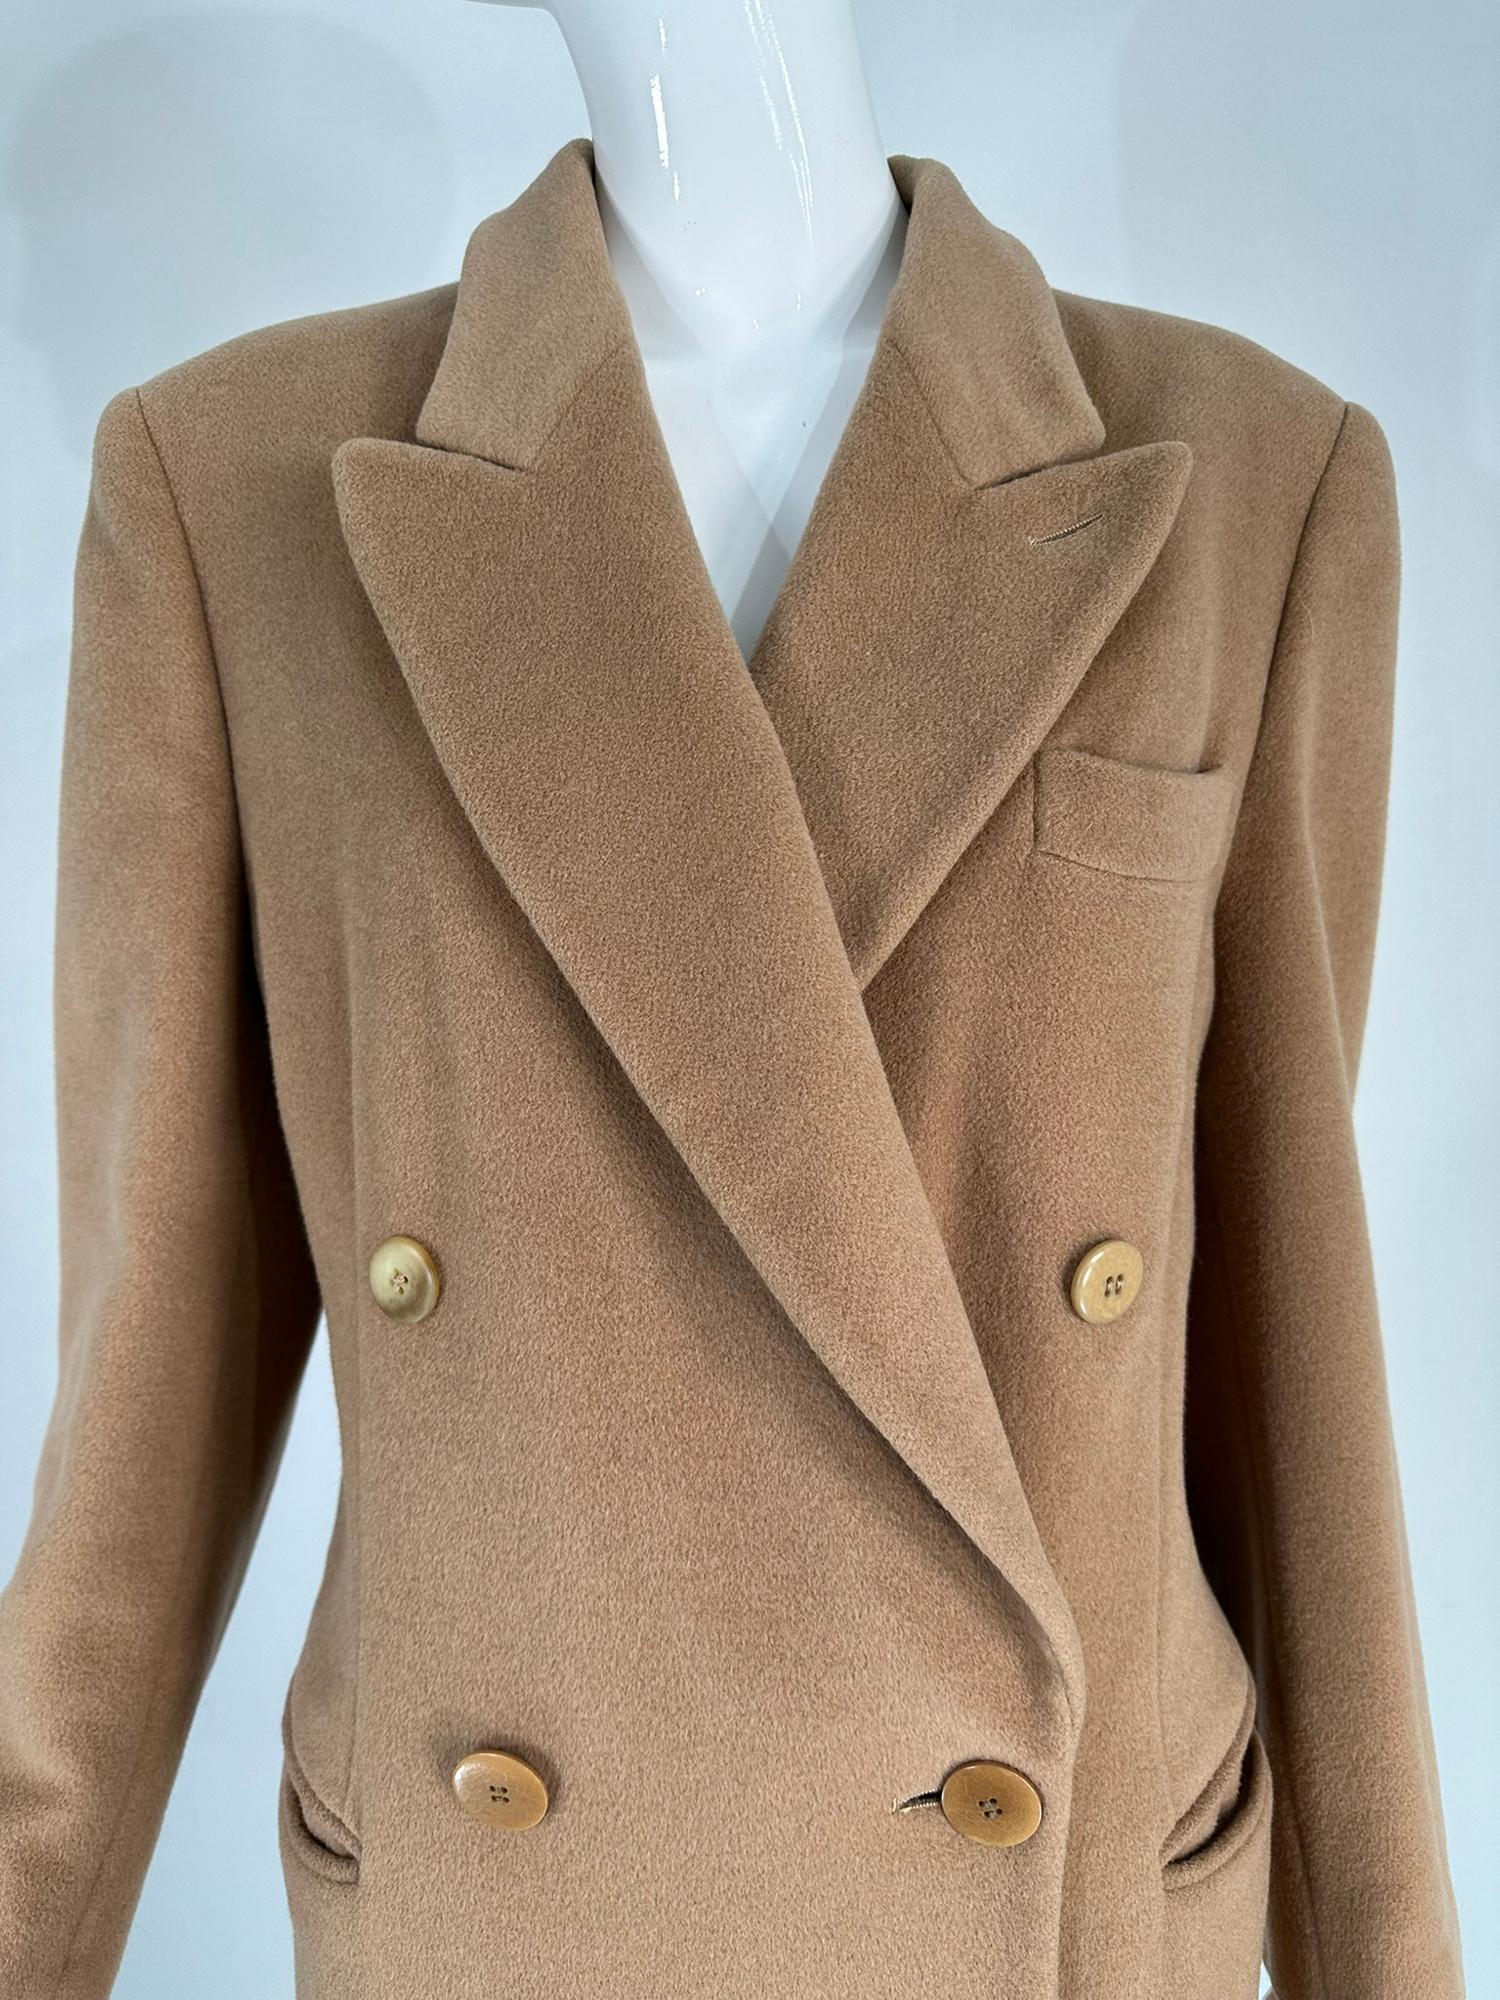 Klassischer Zweireiher-Mantel aus Kamelhaar von Giorgio Armani aus den 1990er Jahren. Ein klassischer Mantel mit eleganten italienischen Designeinflüssen. Der Mantel hat ein gekerbtes Revers, eine doppelreihige Vorderseite mit einer Brusttasche und